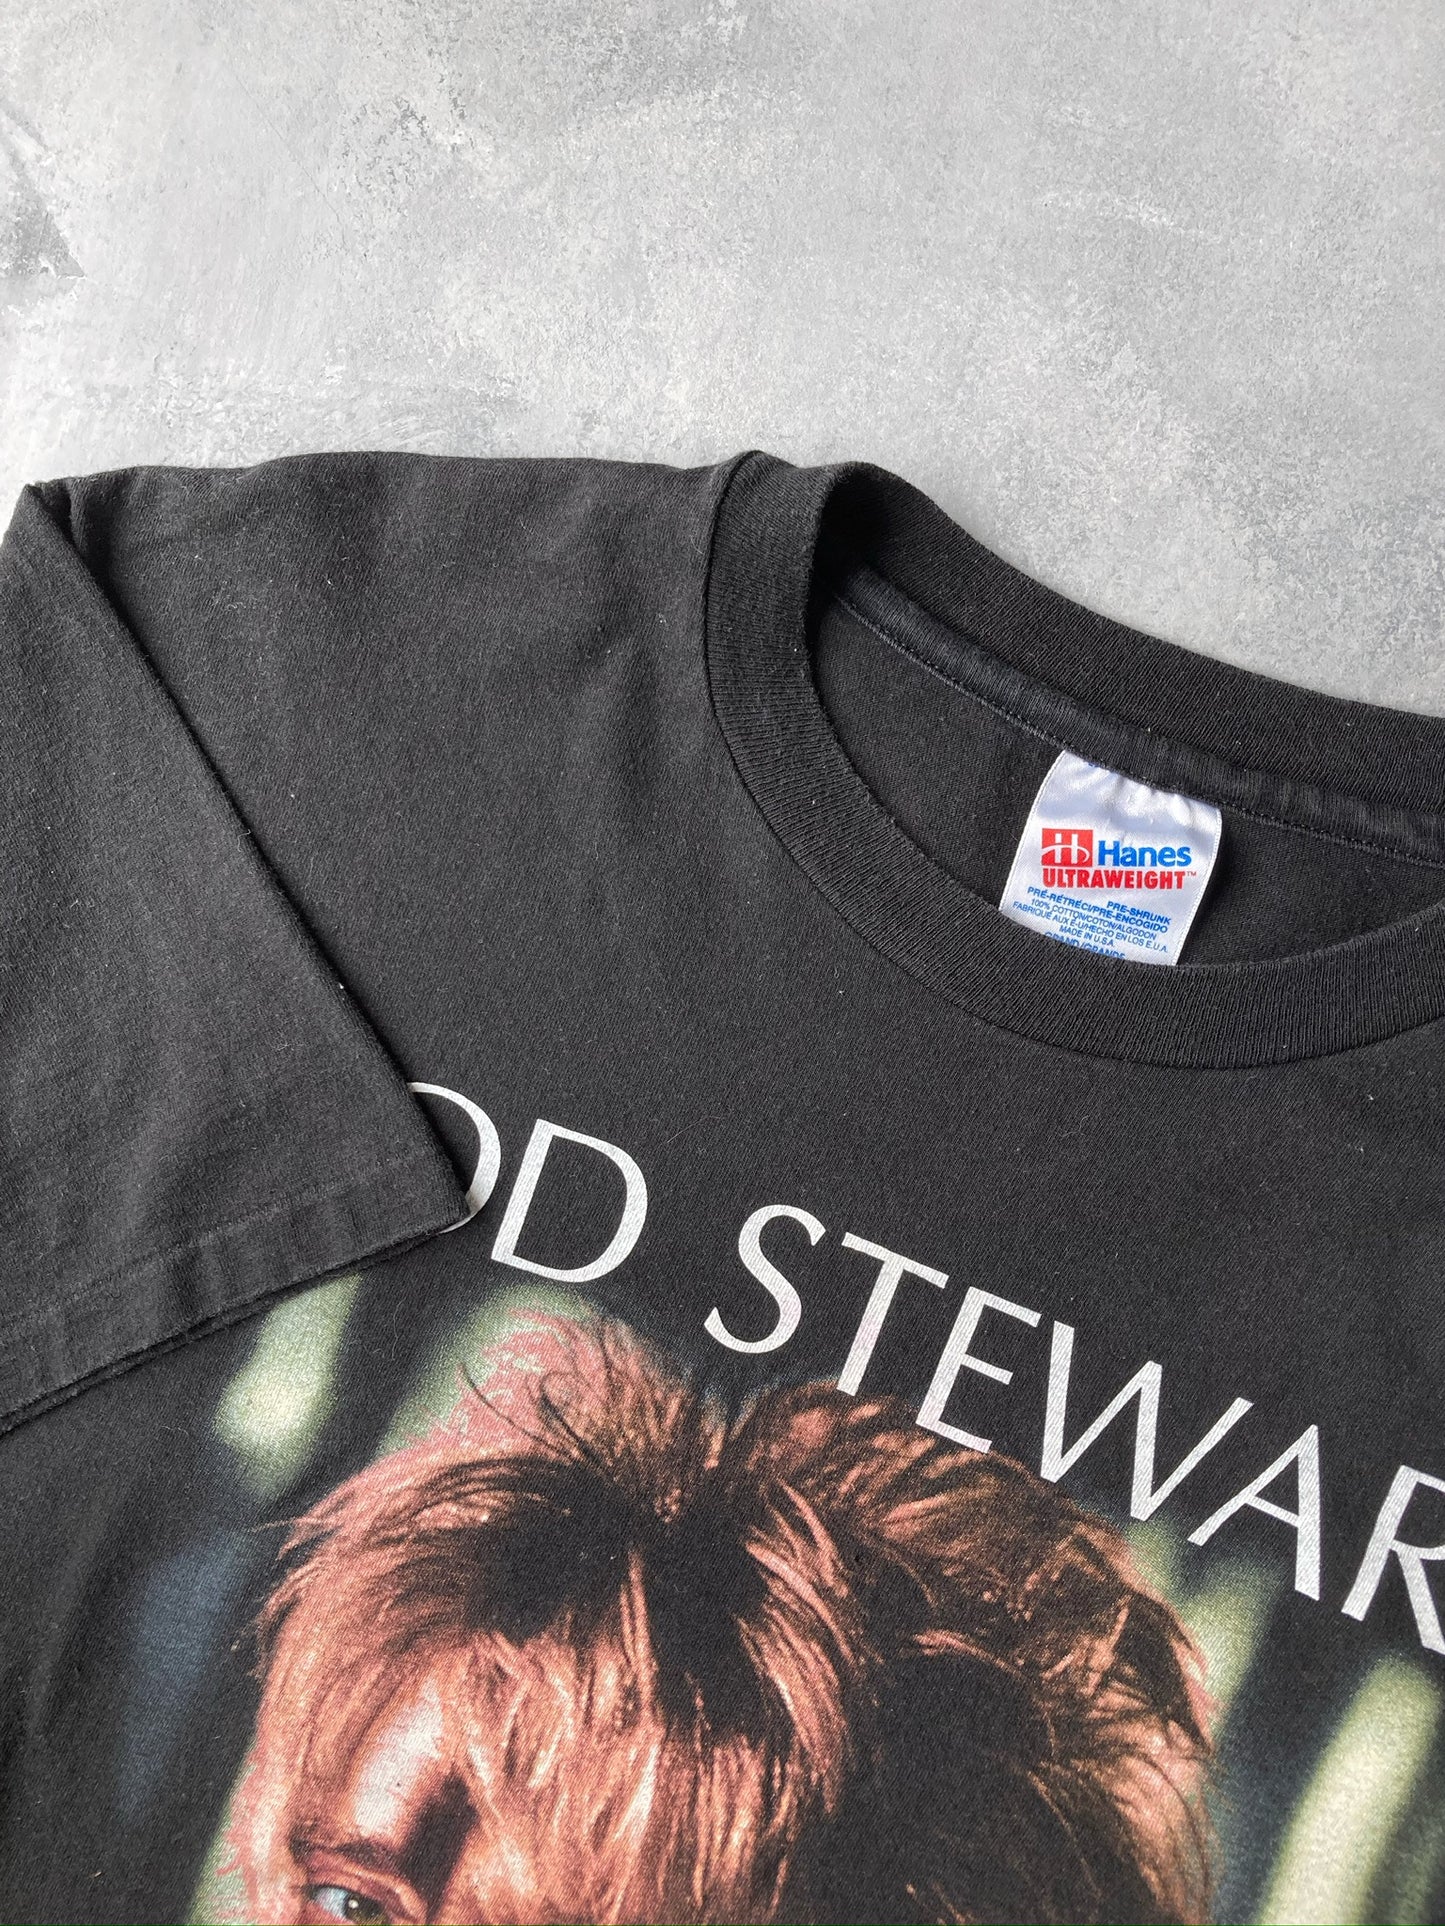 Rod Stewart Tour T-Shirt '94 - Large